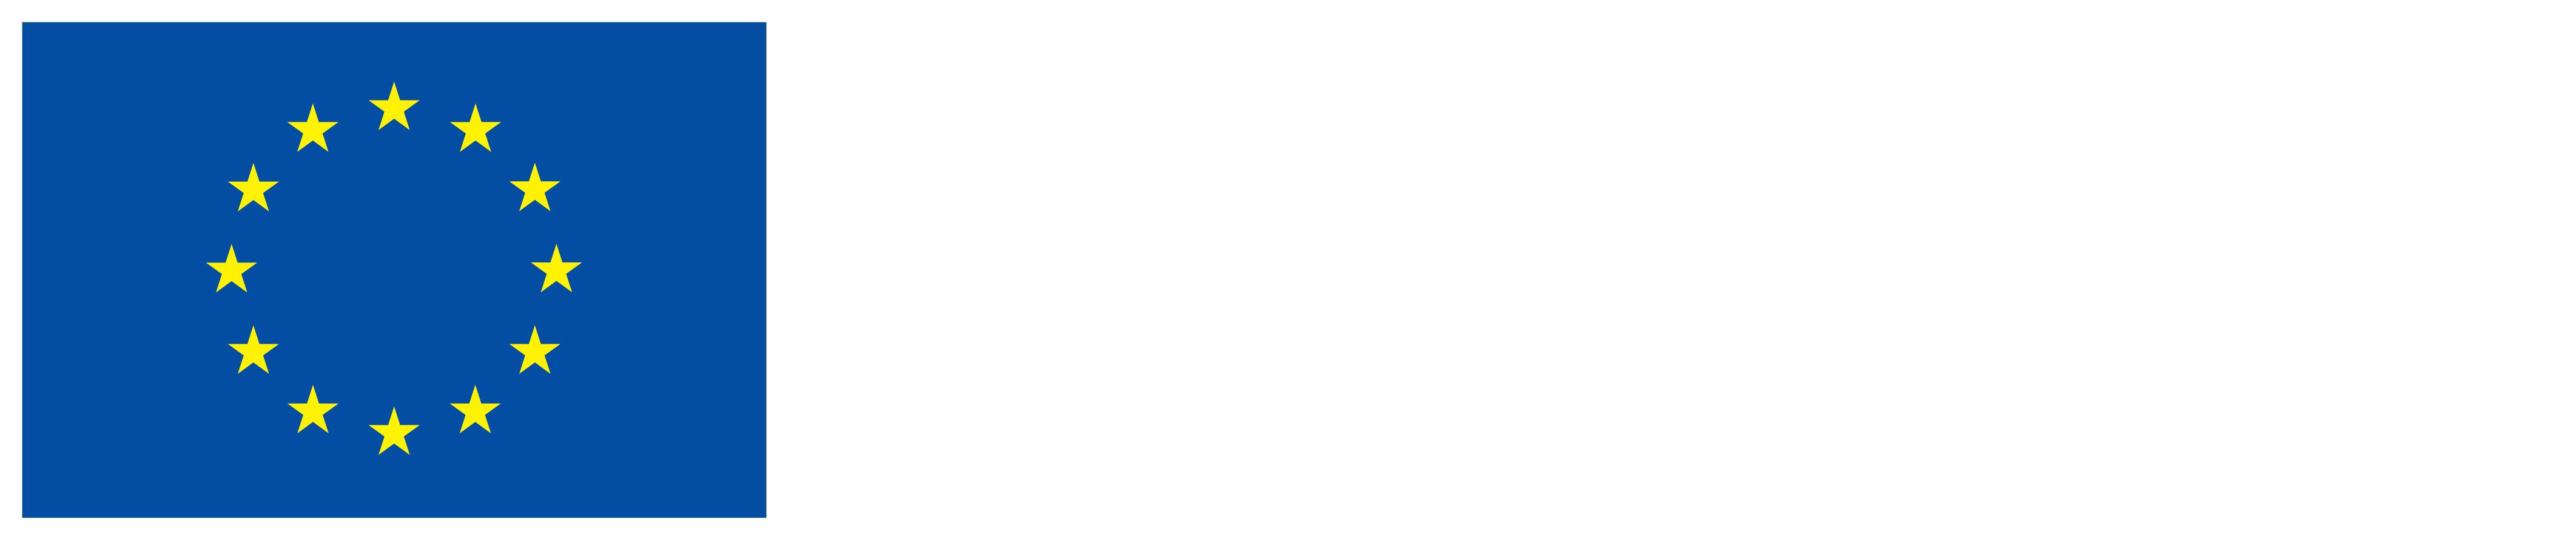 Kofinanziert von der Europäischen Nation